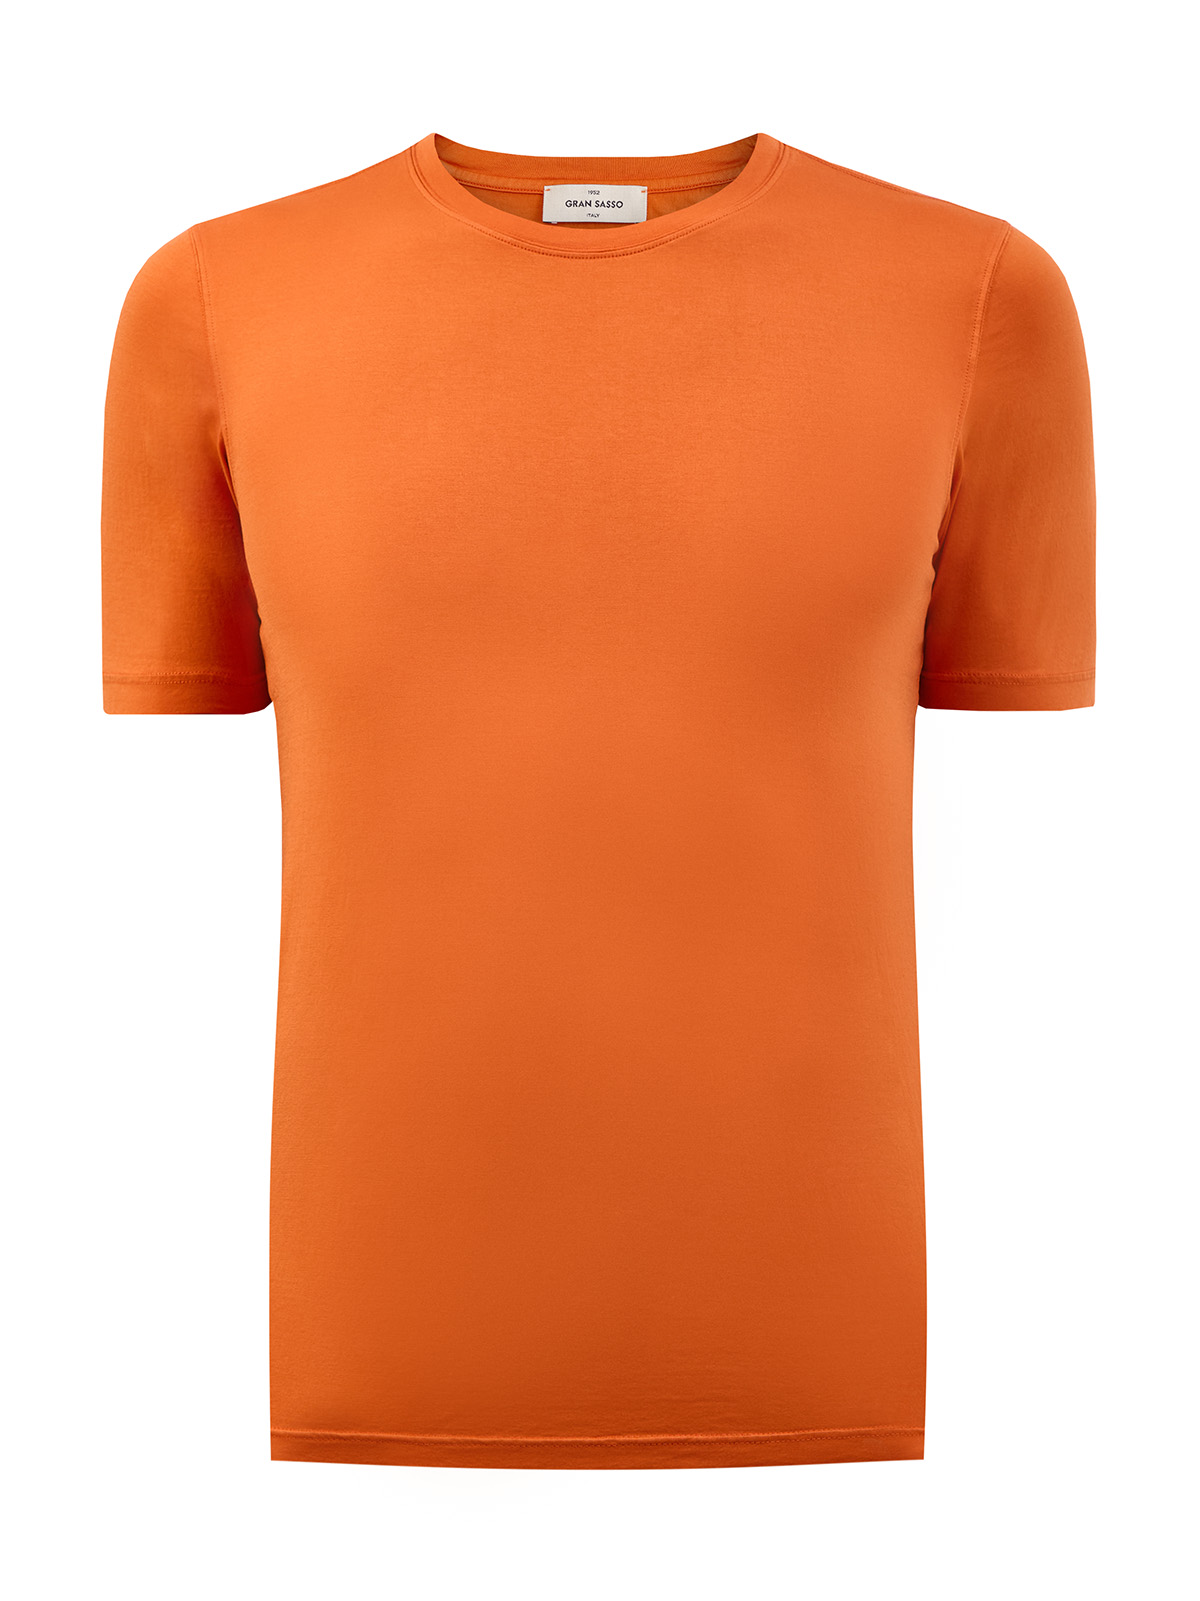 Футболка из гладкого хлопка джерси с контрастной нашивкой GRAN SASSO, цвет оранжевый, размер 48;50;56 - фото 1